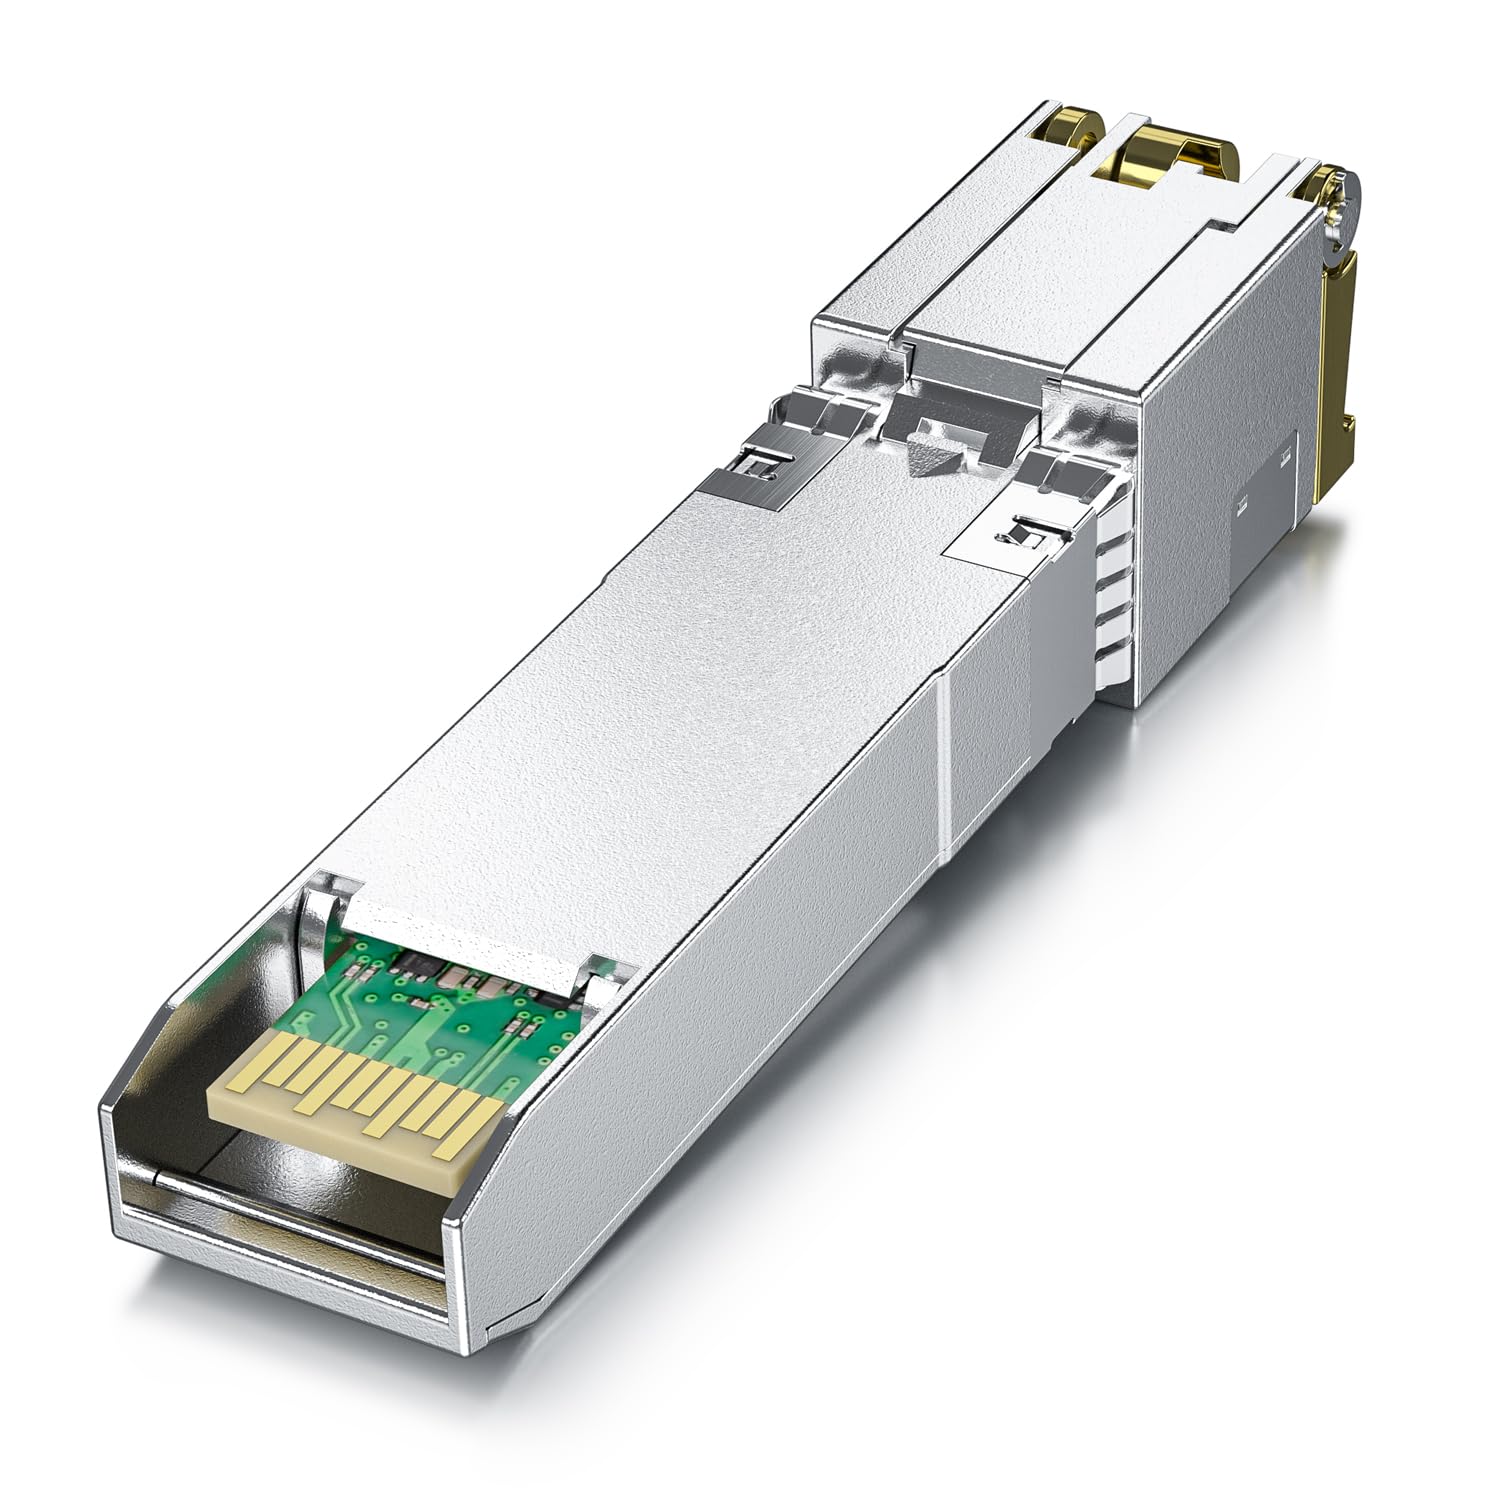 10GBase-T Cisco SFP-10G-T-S Compatible Transceiver, 10G SFP+ Copper RJ-45 Transceiver for Ubiquiti, Meraki, Mikrotik, Netgear, D-Link, Accton, Cumulus, Emulex etc.(CAT.6a/CAT7, 30m) 2-Pack